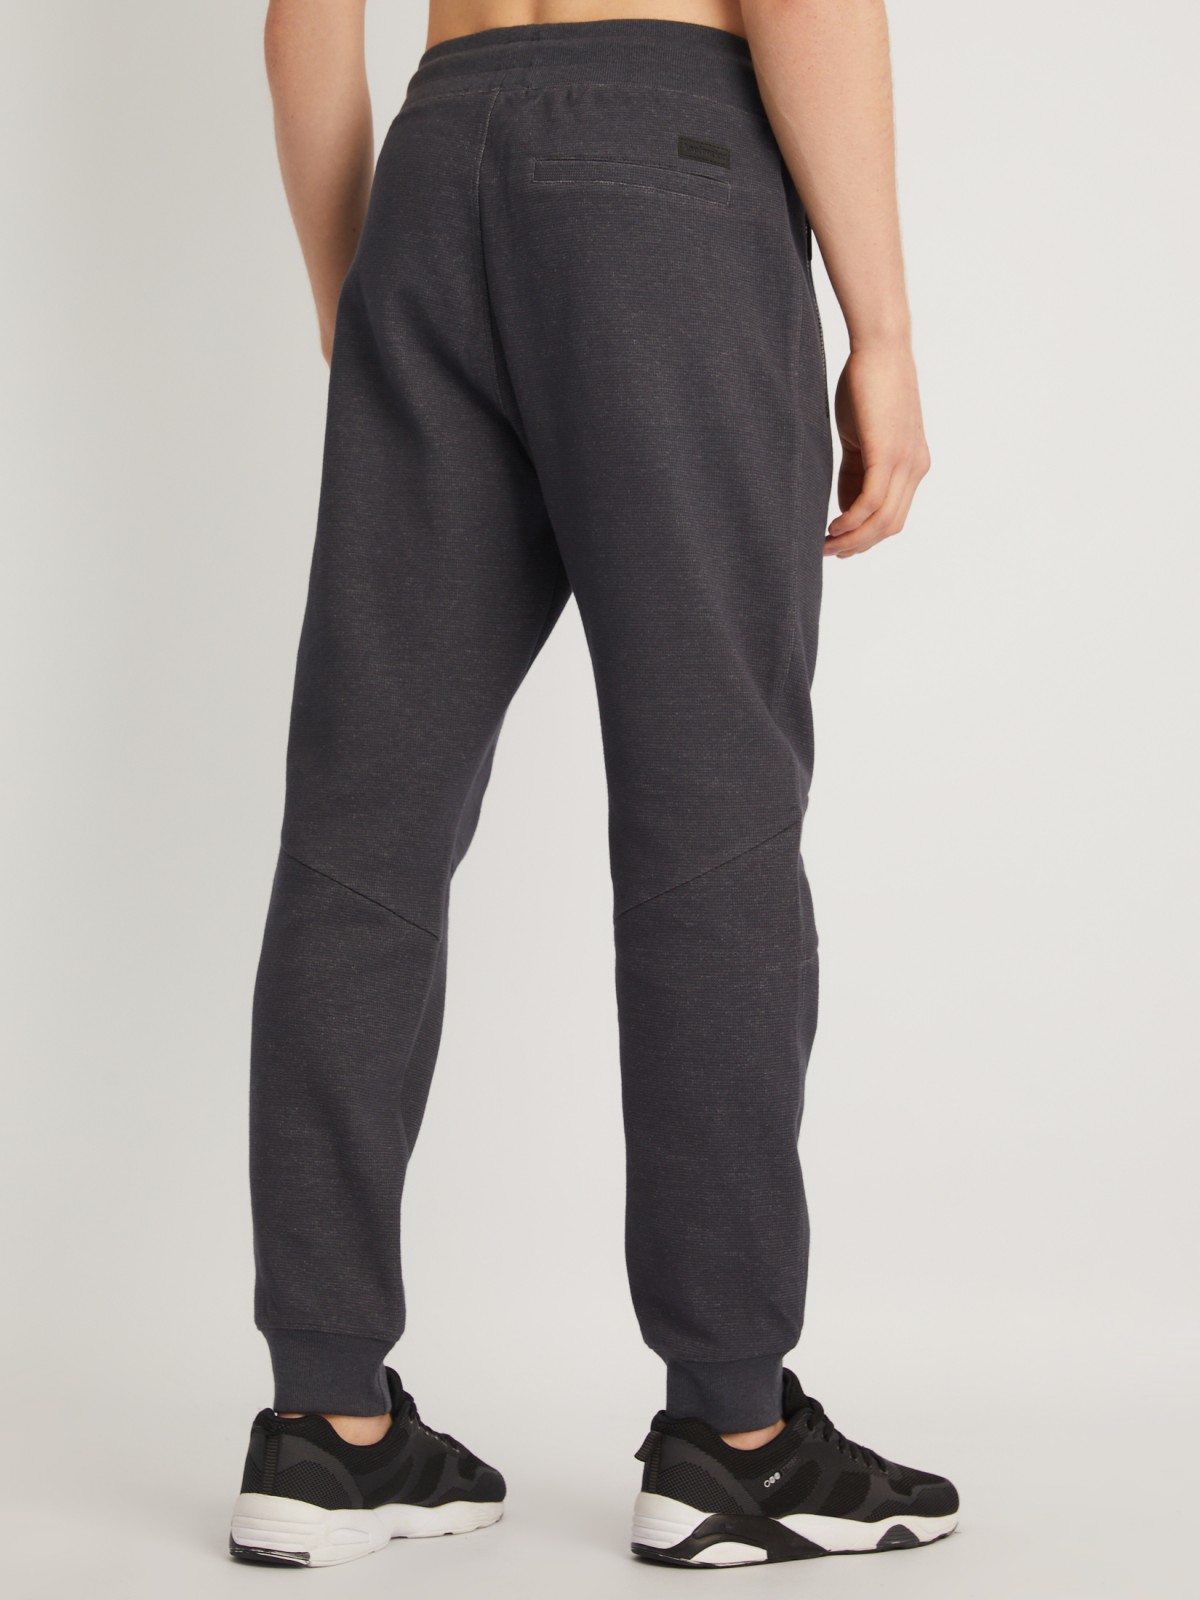 Трикотажные брюки-джоггеры в спортивном стиле zolla 014127679013, цвет темно-серый, размер S - фото 5